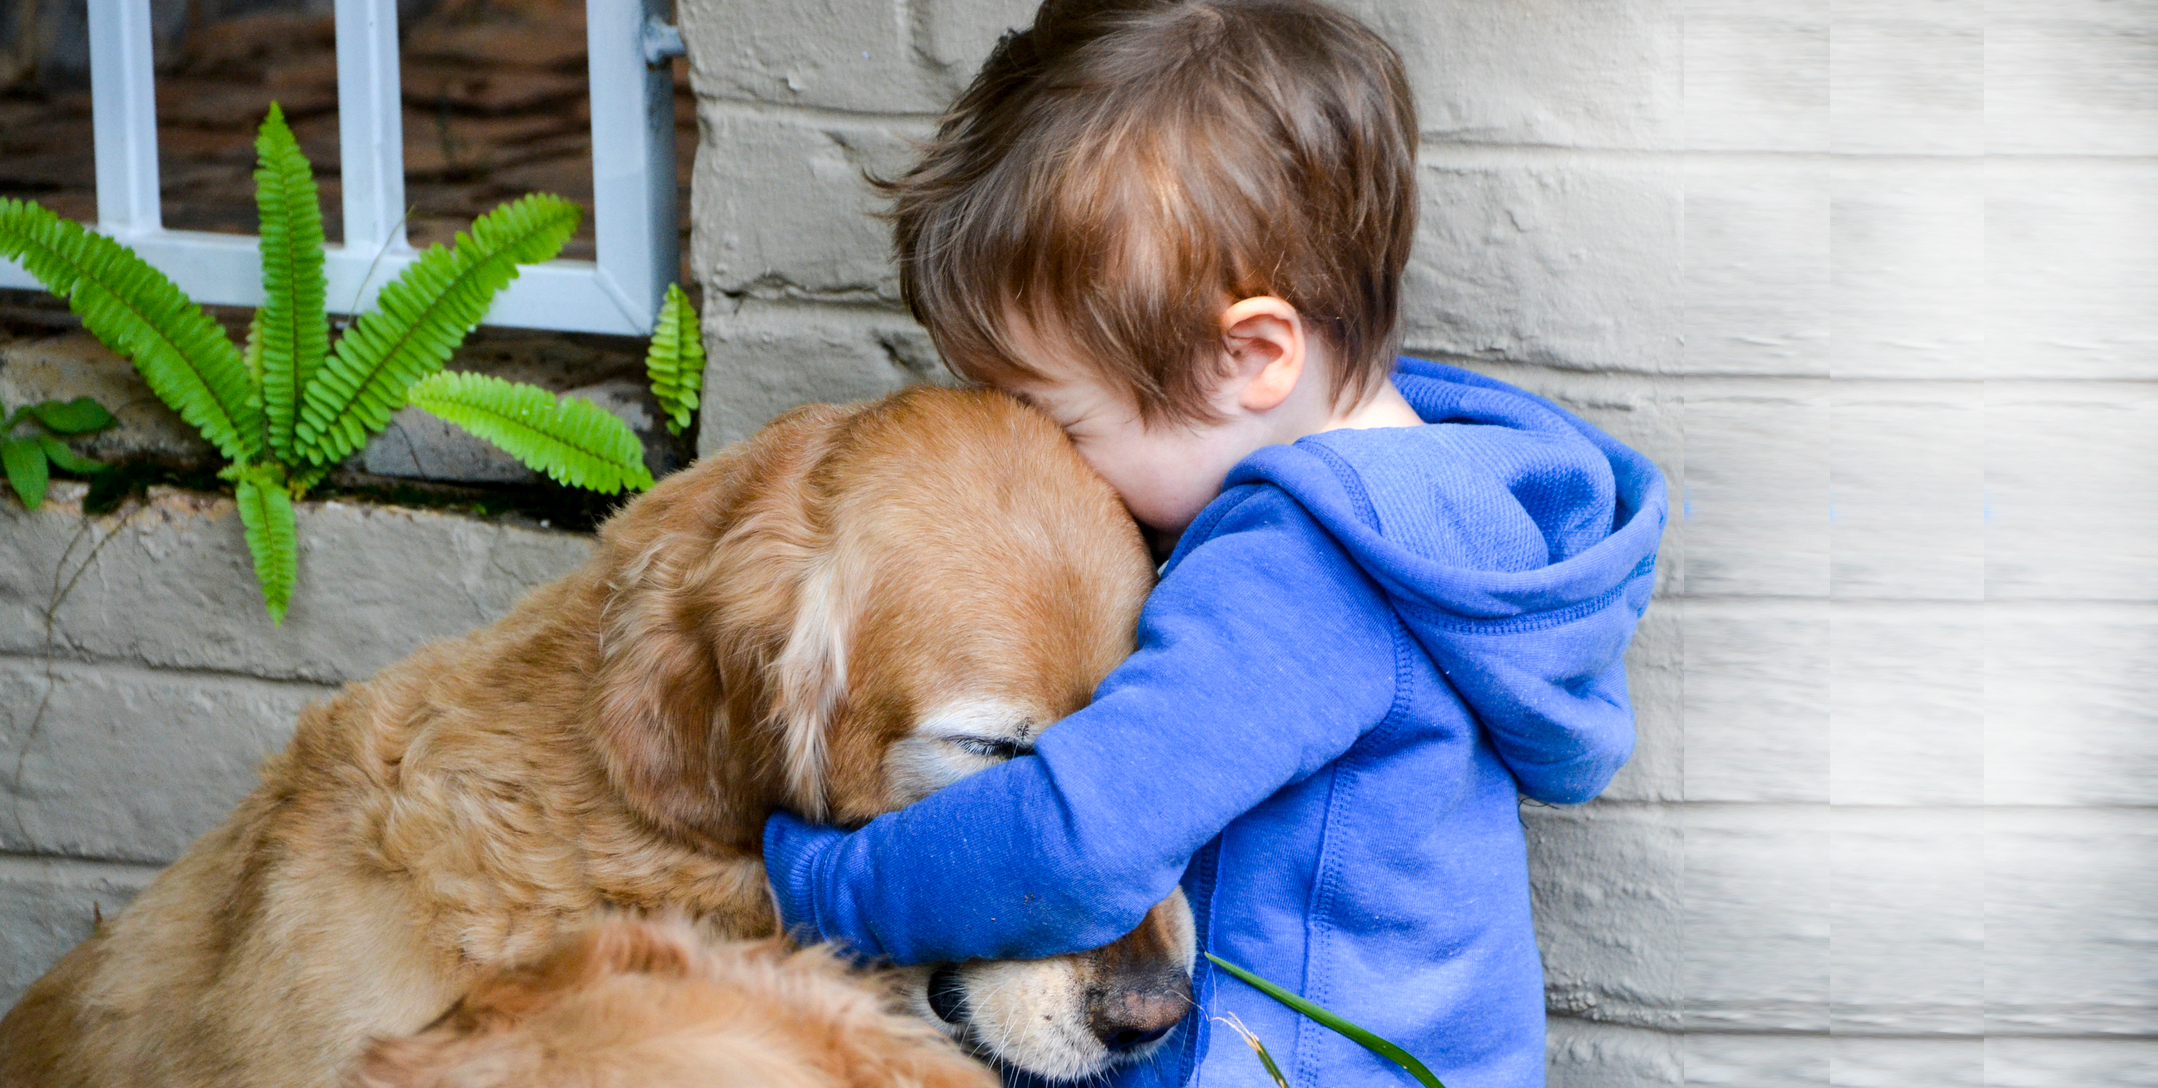 He love animals. Для детей. Животные. Ребенок обнимает собаку. Любовь к животным. Мальчик обнимает щенка.